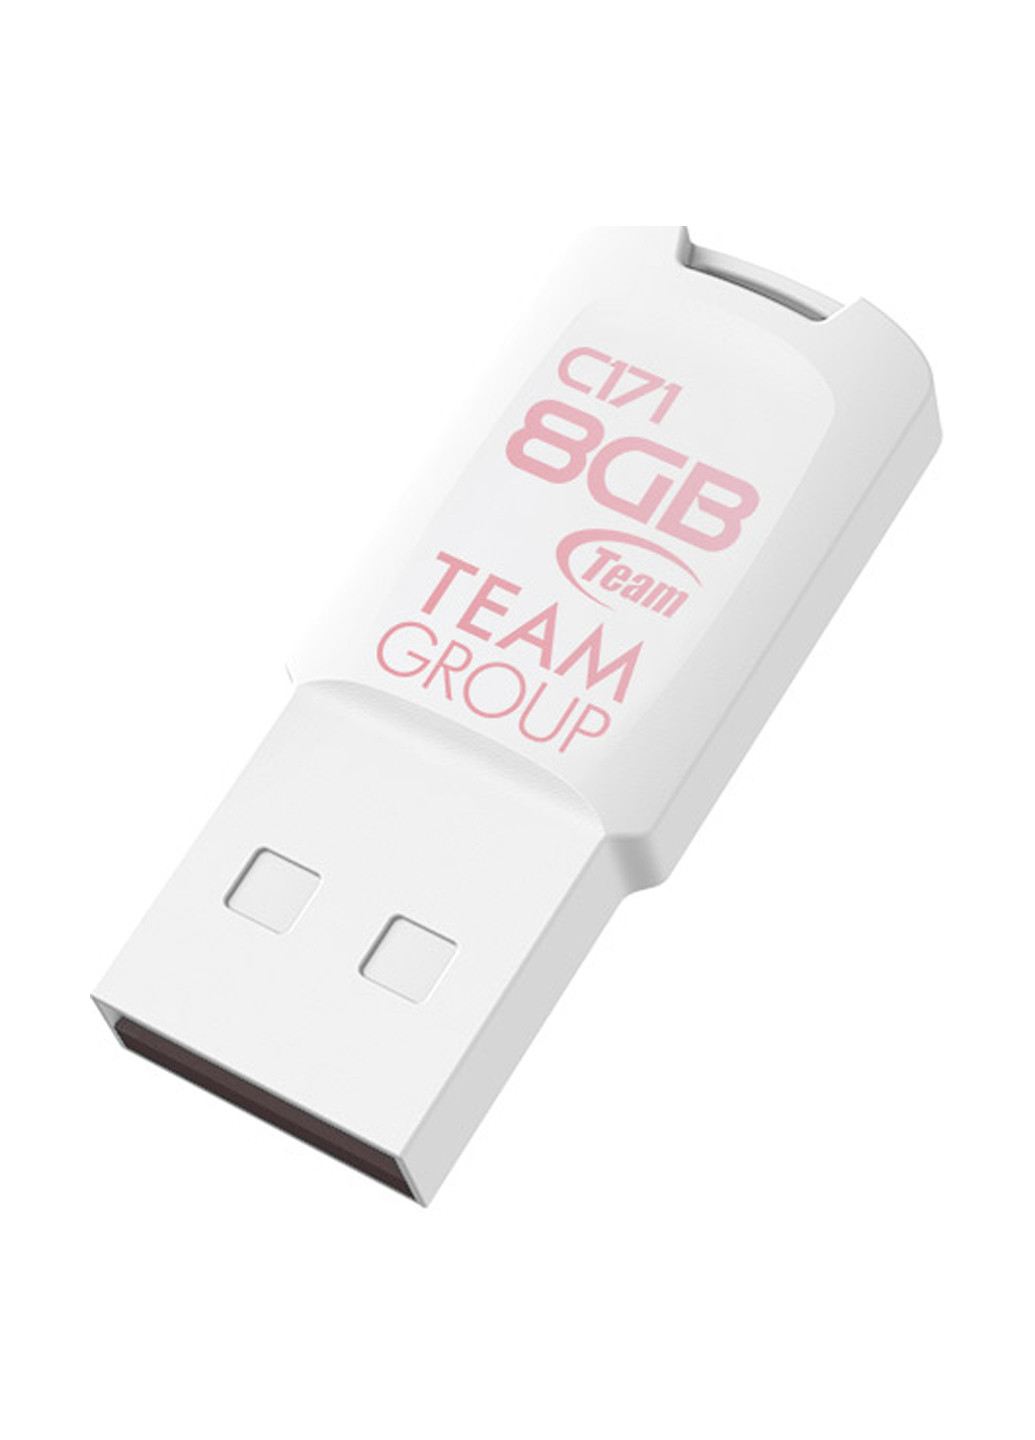 Флеш пам'ять USB C171 8GB White (TC1718GW01) Team флеш память usb team c171 8gb white (tc1718gw01) (134201738)